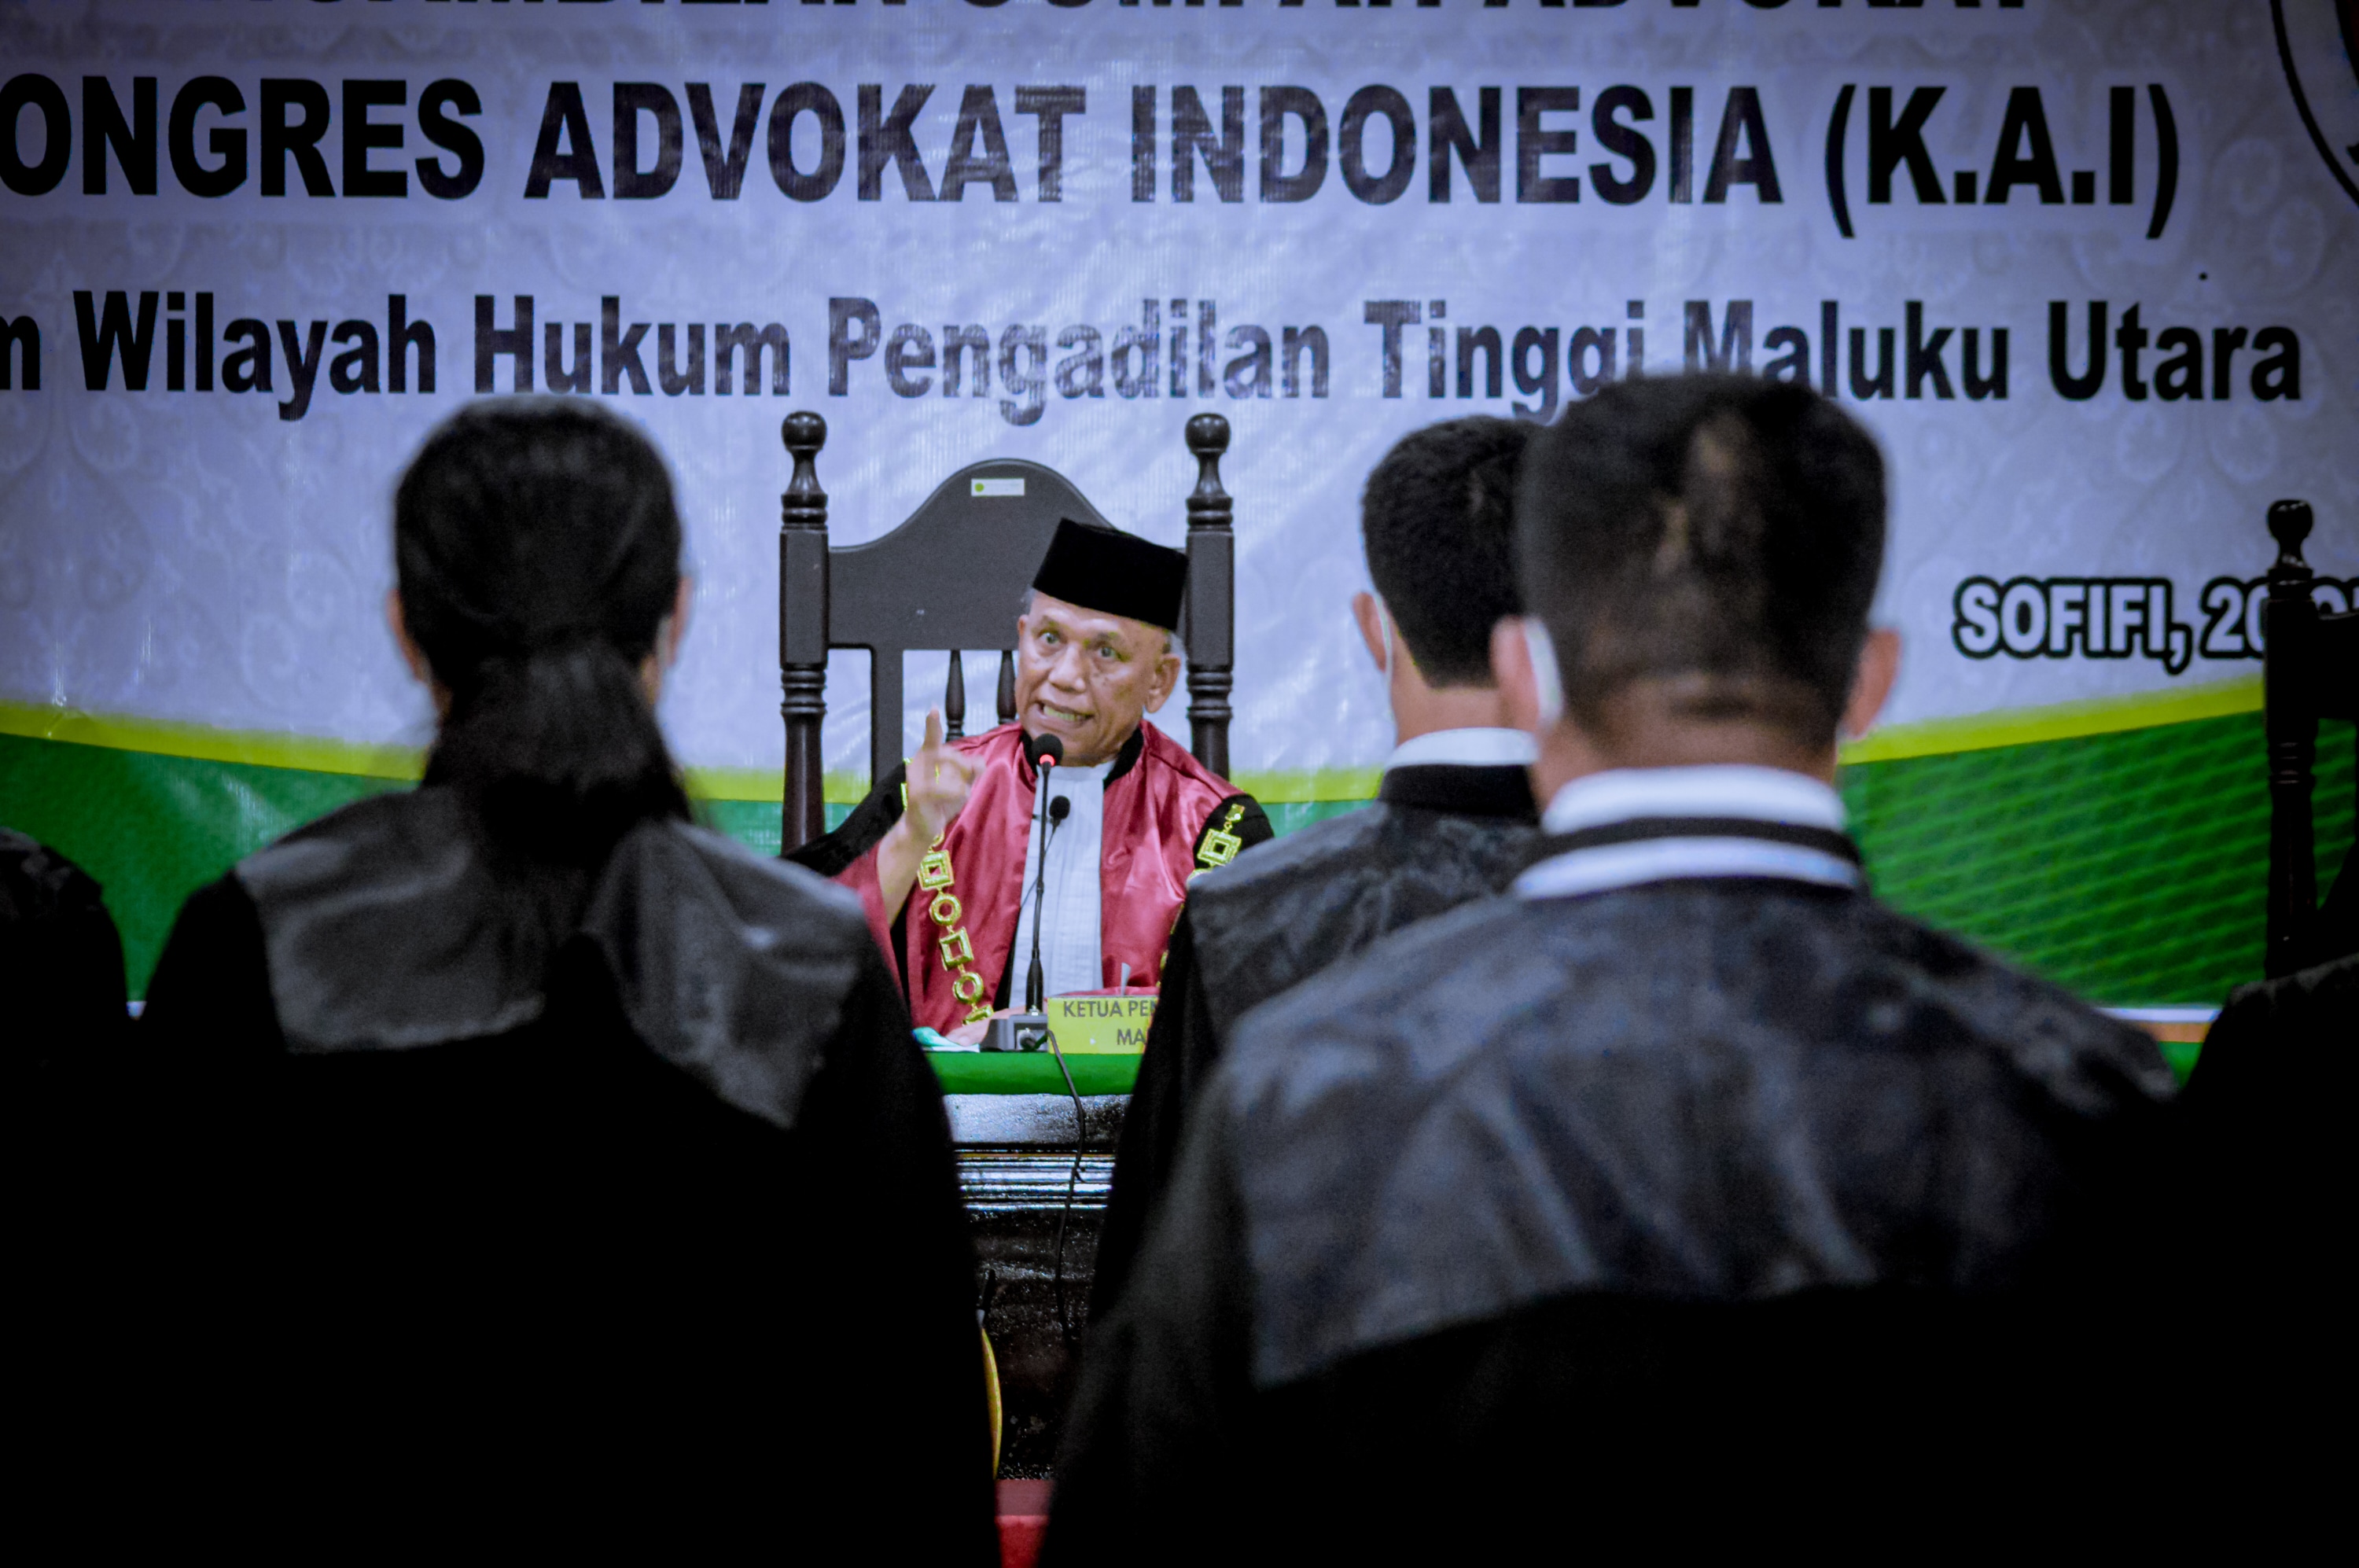 Pengambilan Sumpah Advokat K.A.I. (Kongres Advokat Indonesia) 